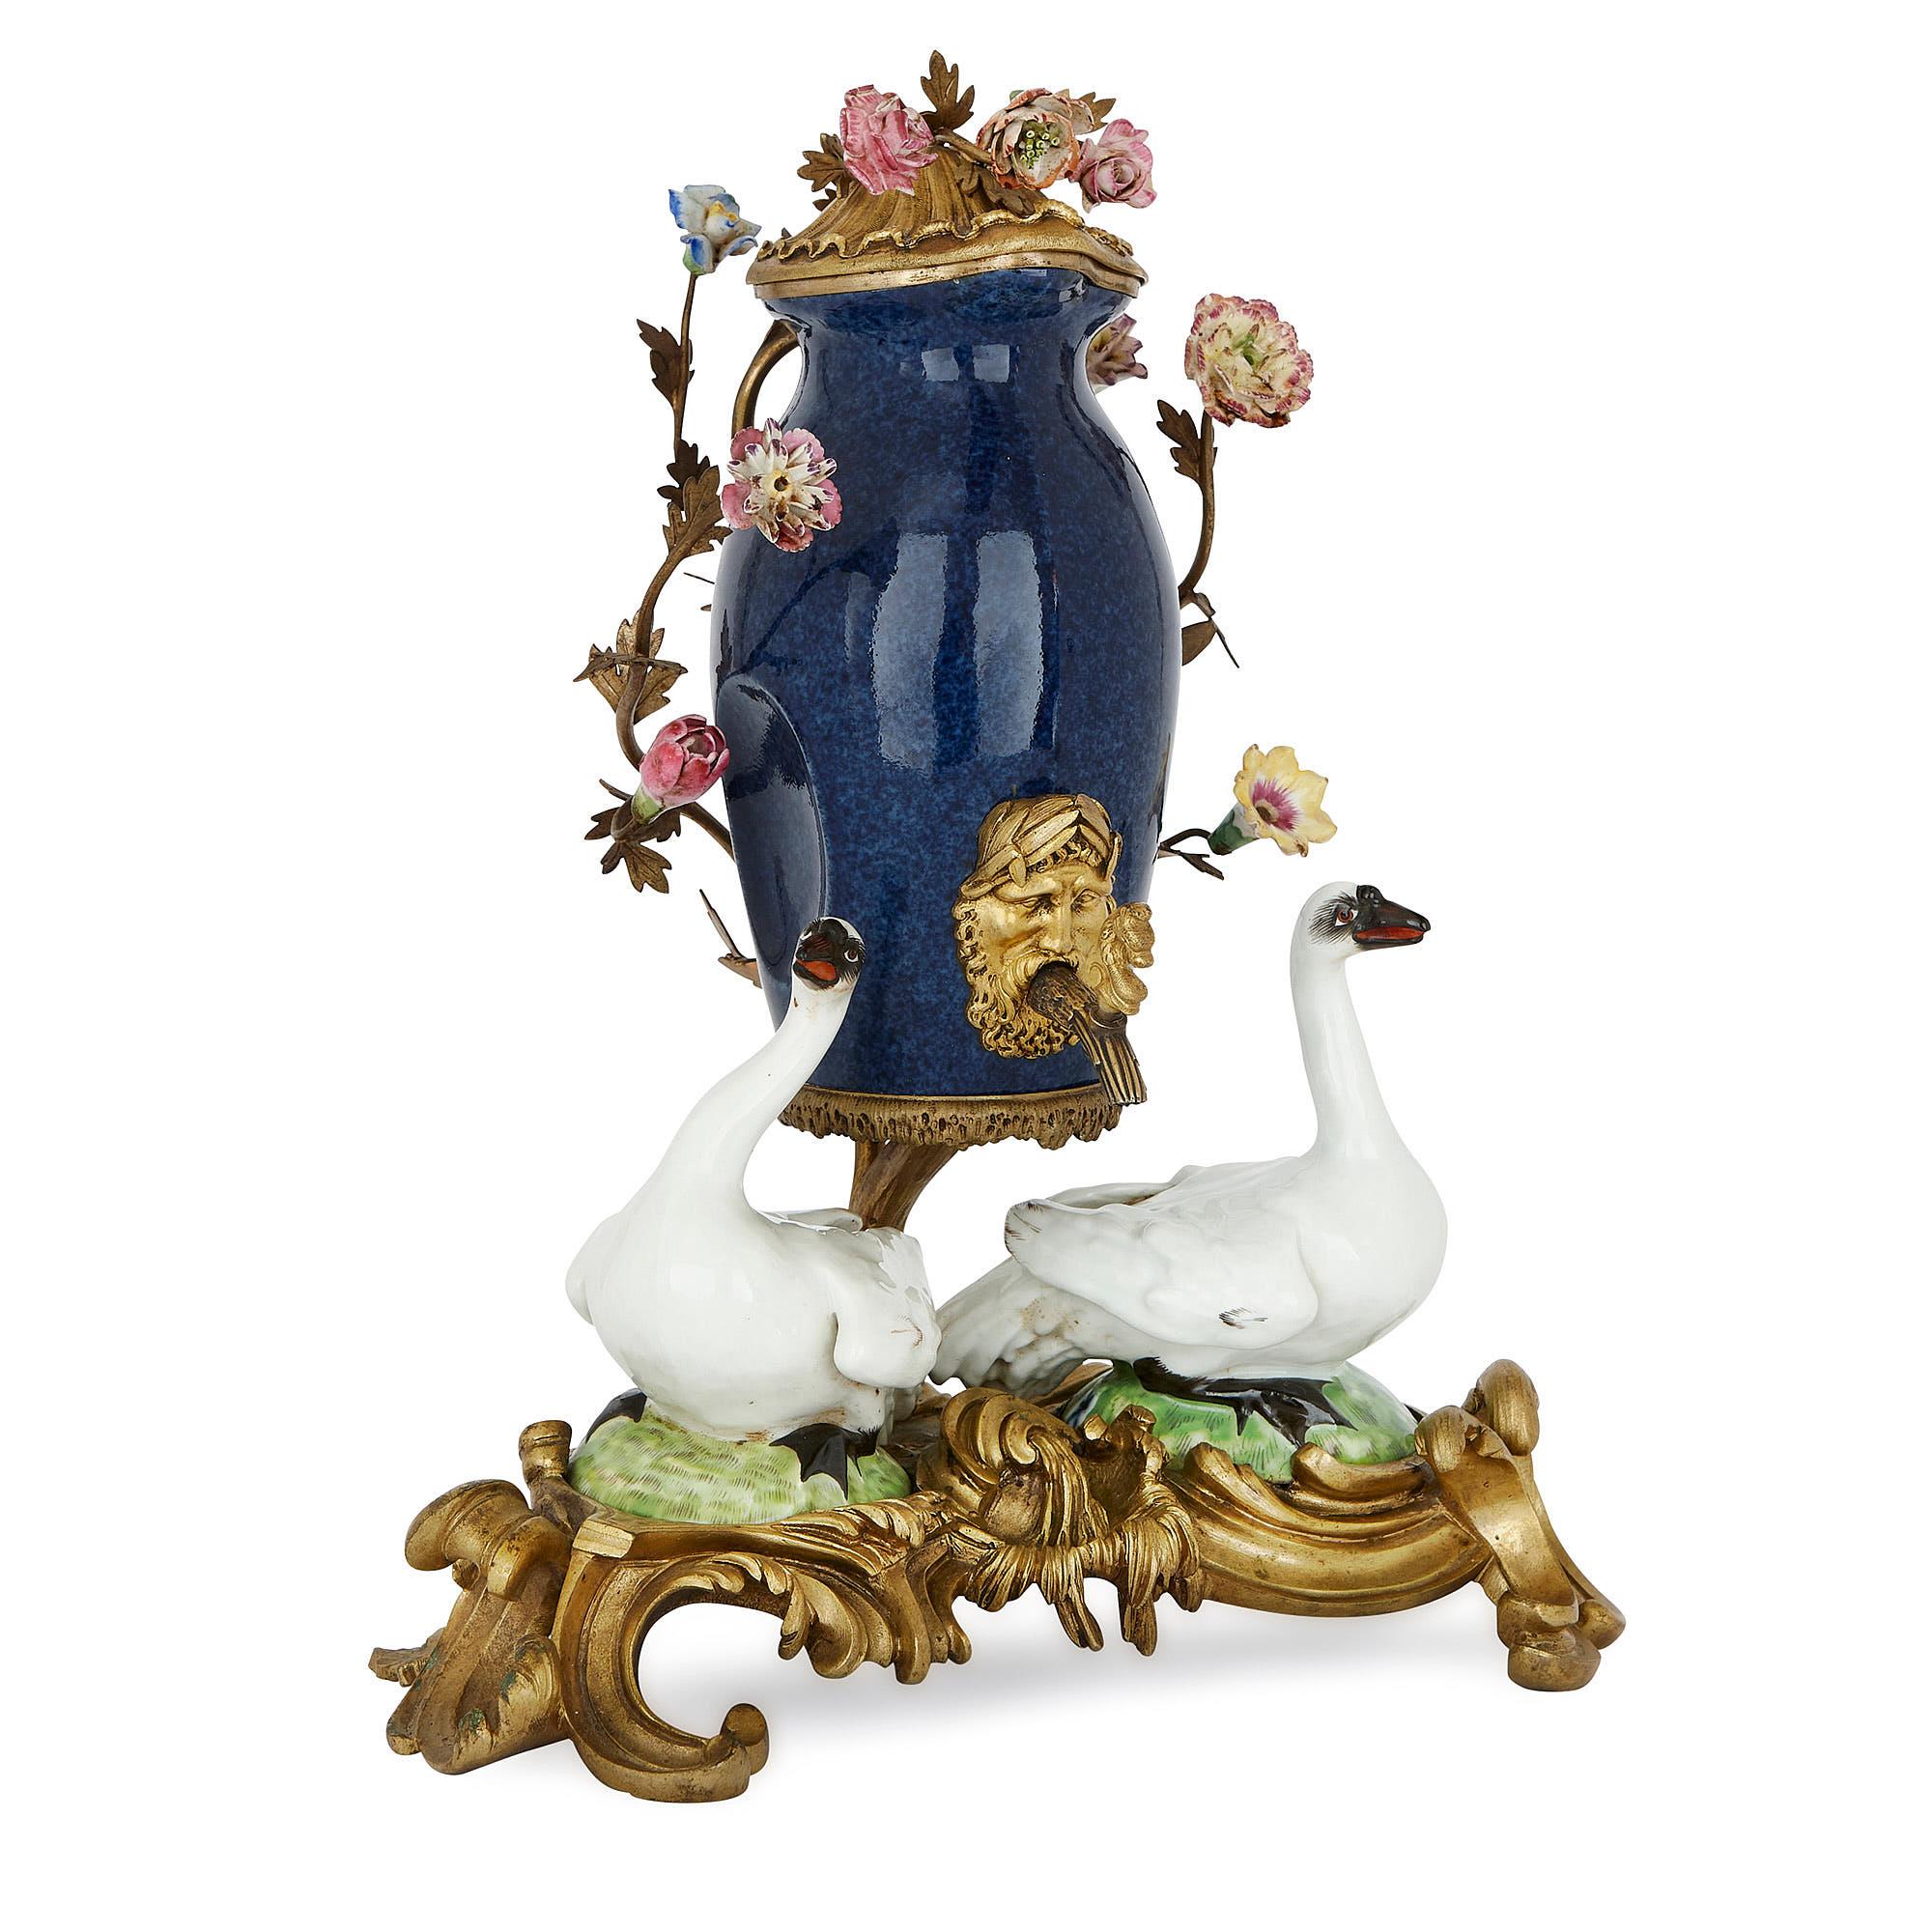 Cette fontaine de table en porcelaine colorée, façonnée dans le style allemand de Meissen, a été fabriquée au XIXe siècle par la société française de porcelaine Samson et Cie. 

La fontaine de table se compose d'un vase central en porcelaine qui est